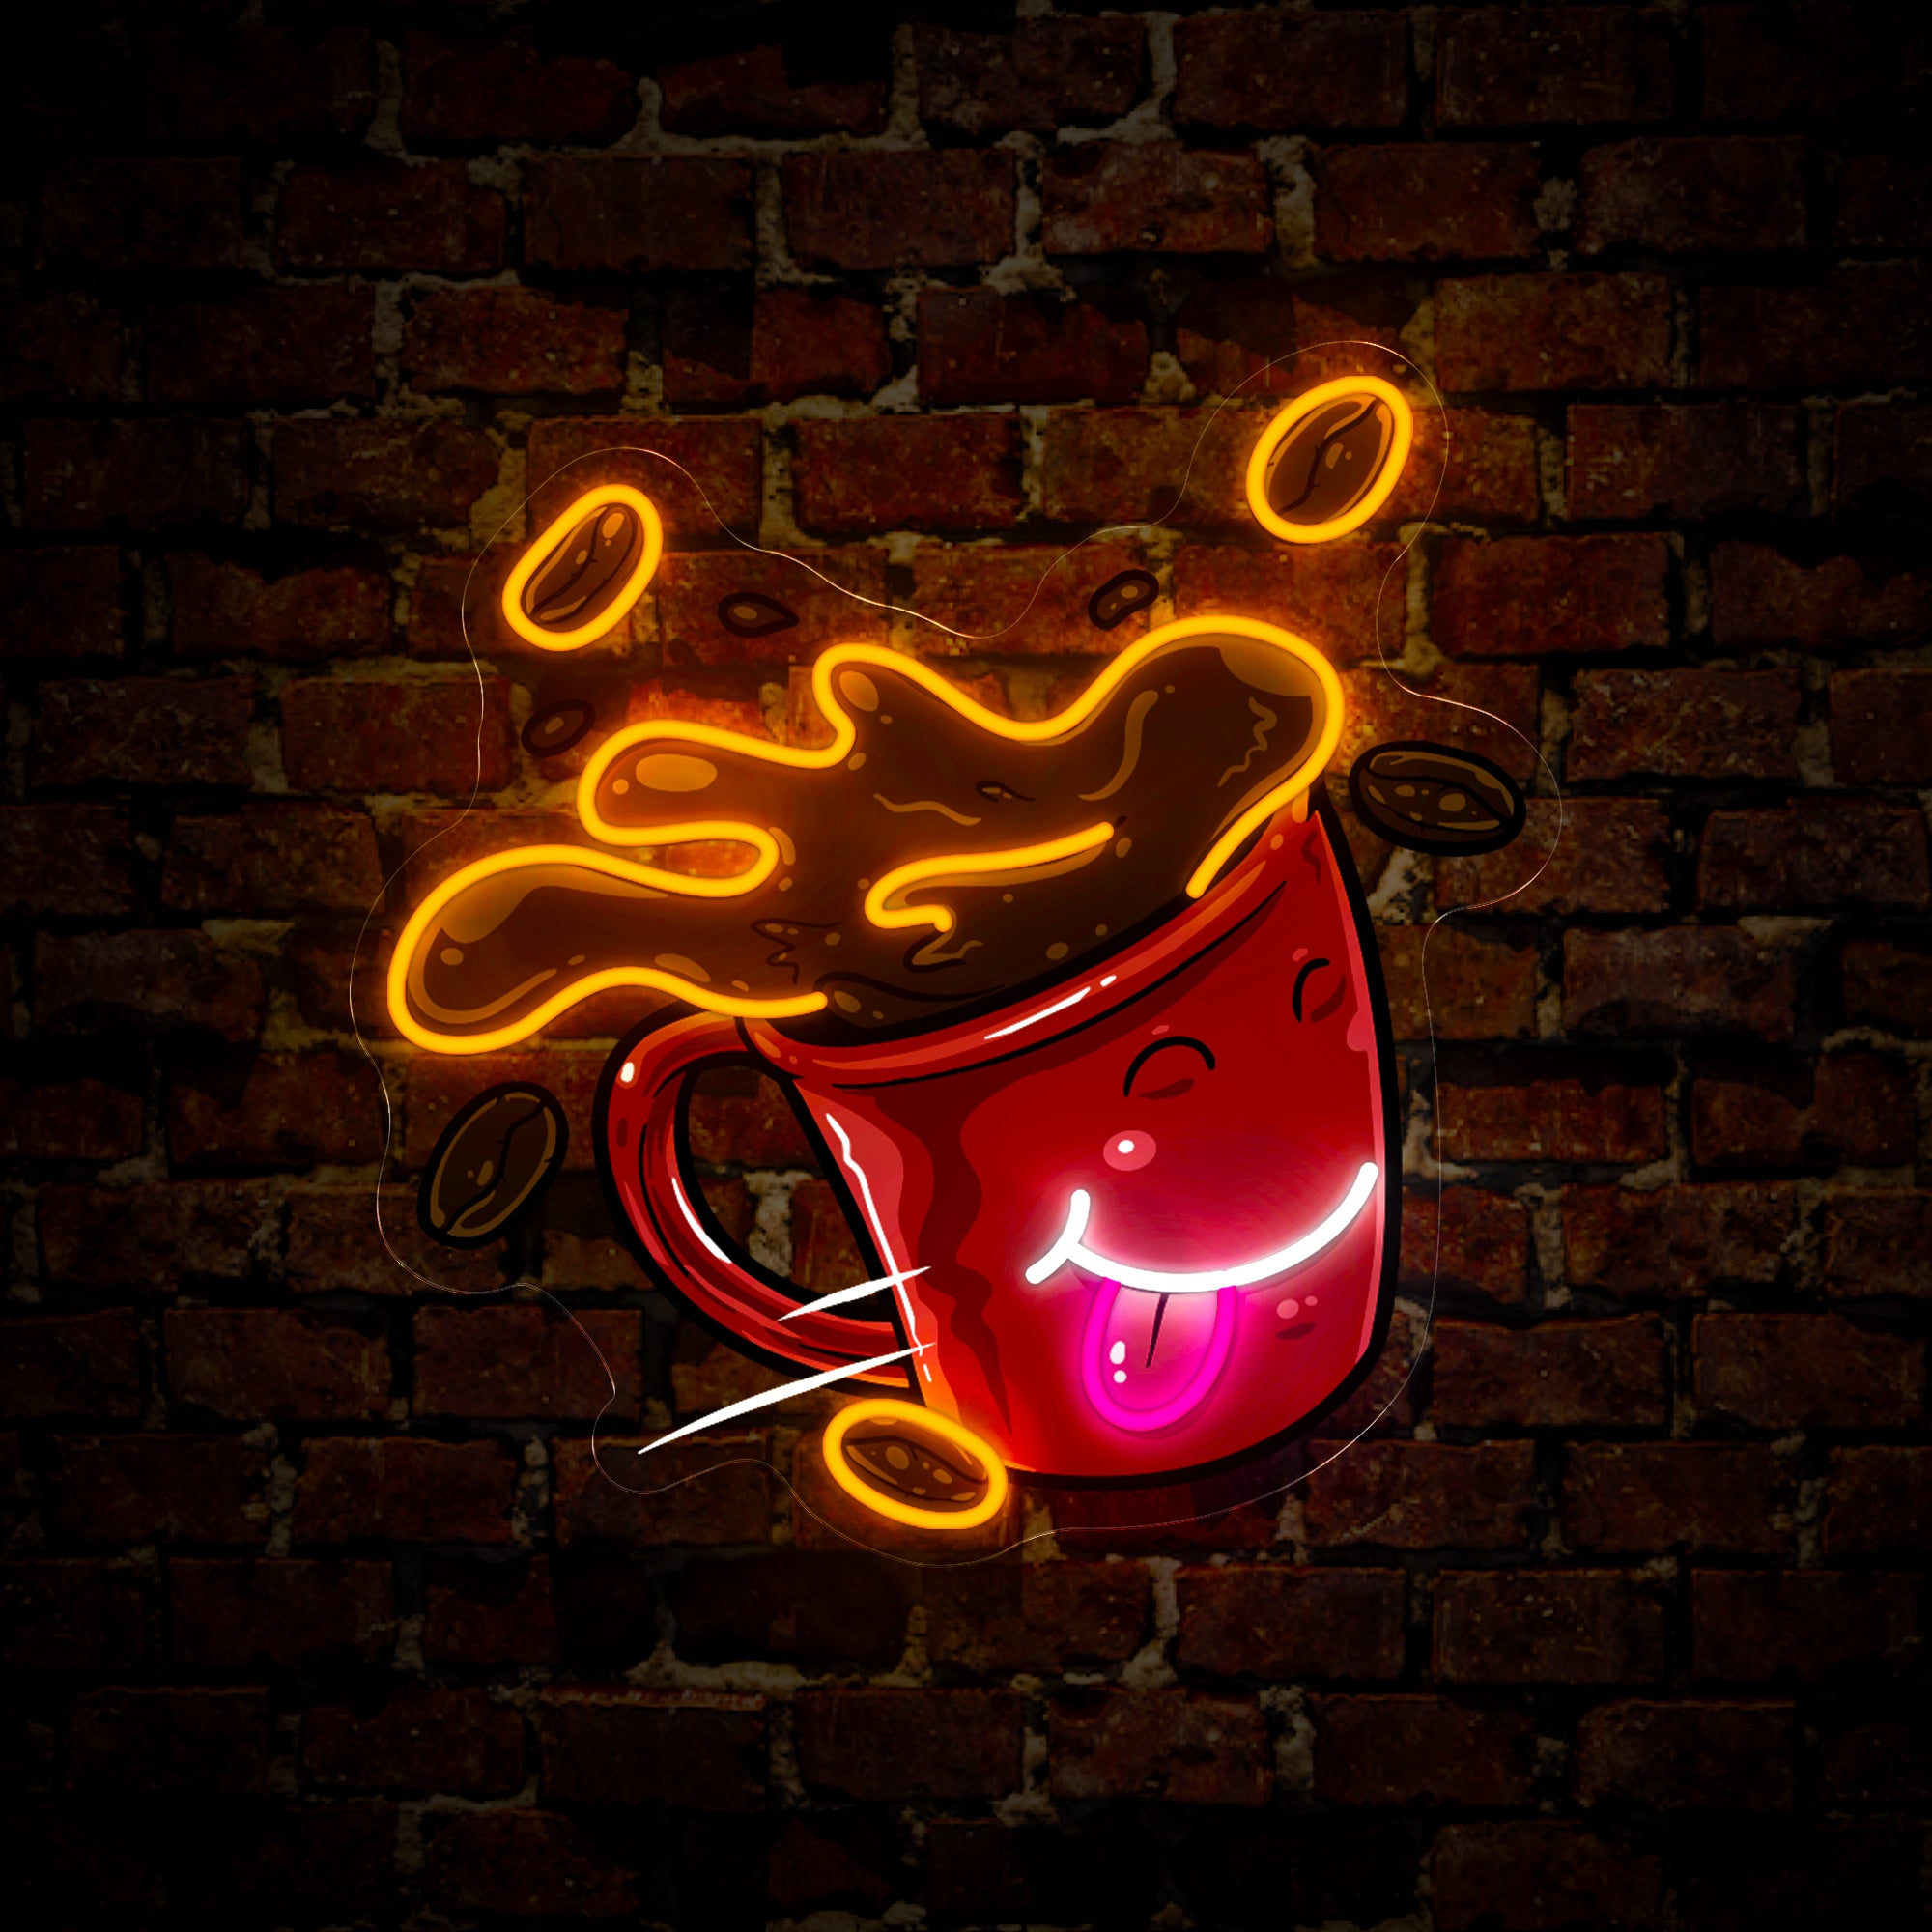 Coffee Mug Artwork Neon Sign